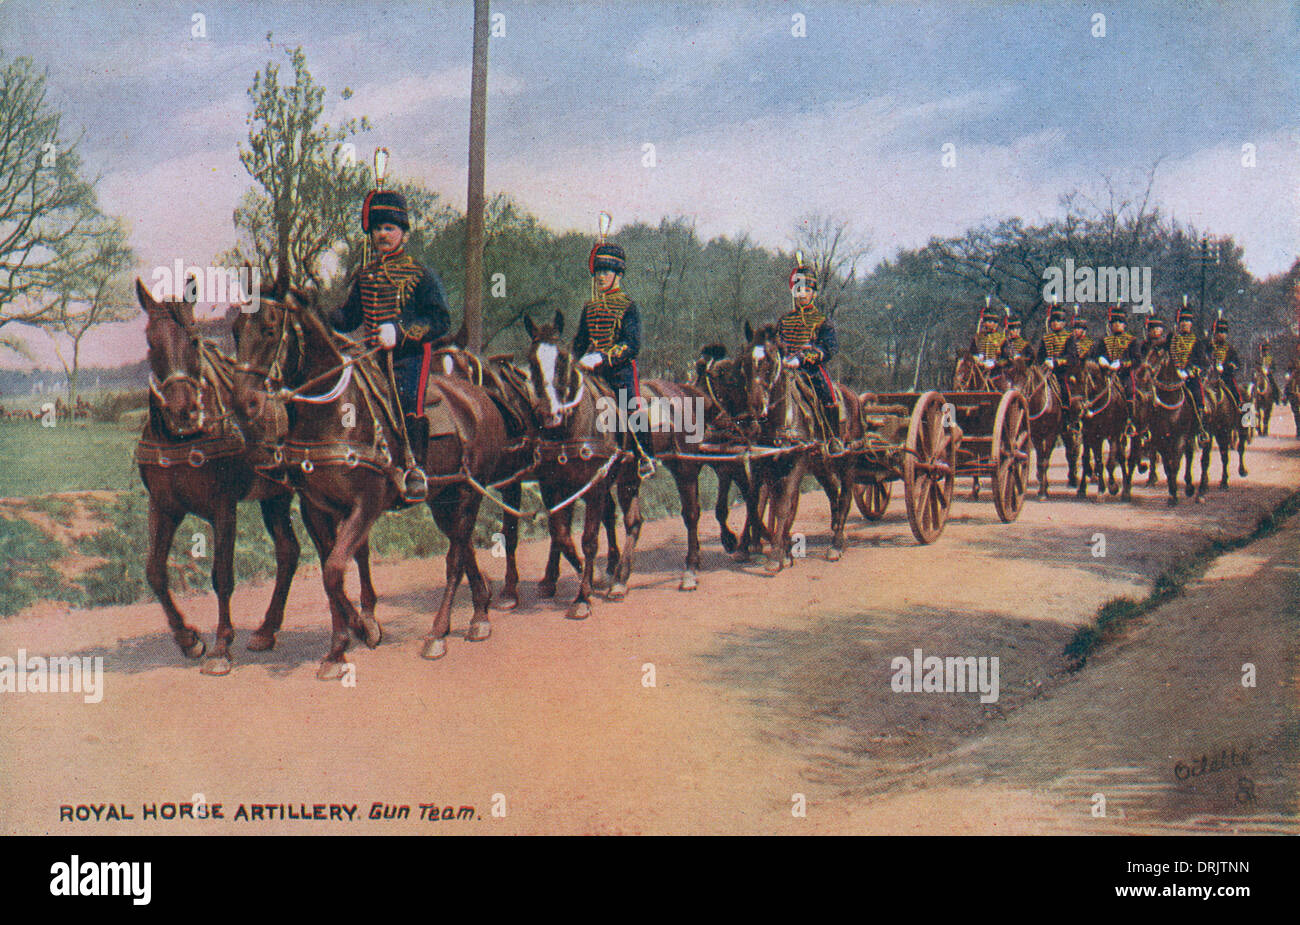 Royal Horse Artillery - équipe des armes à feu Banque D'Images